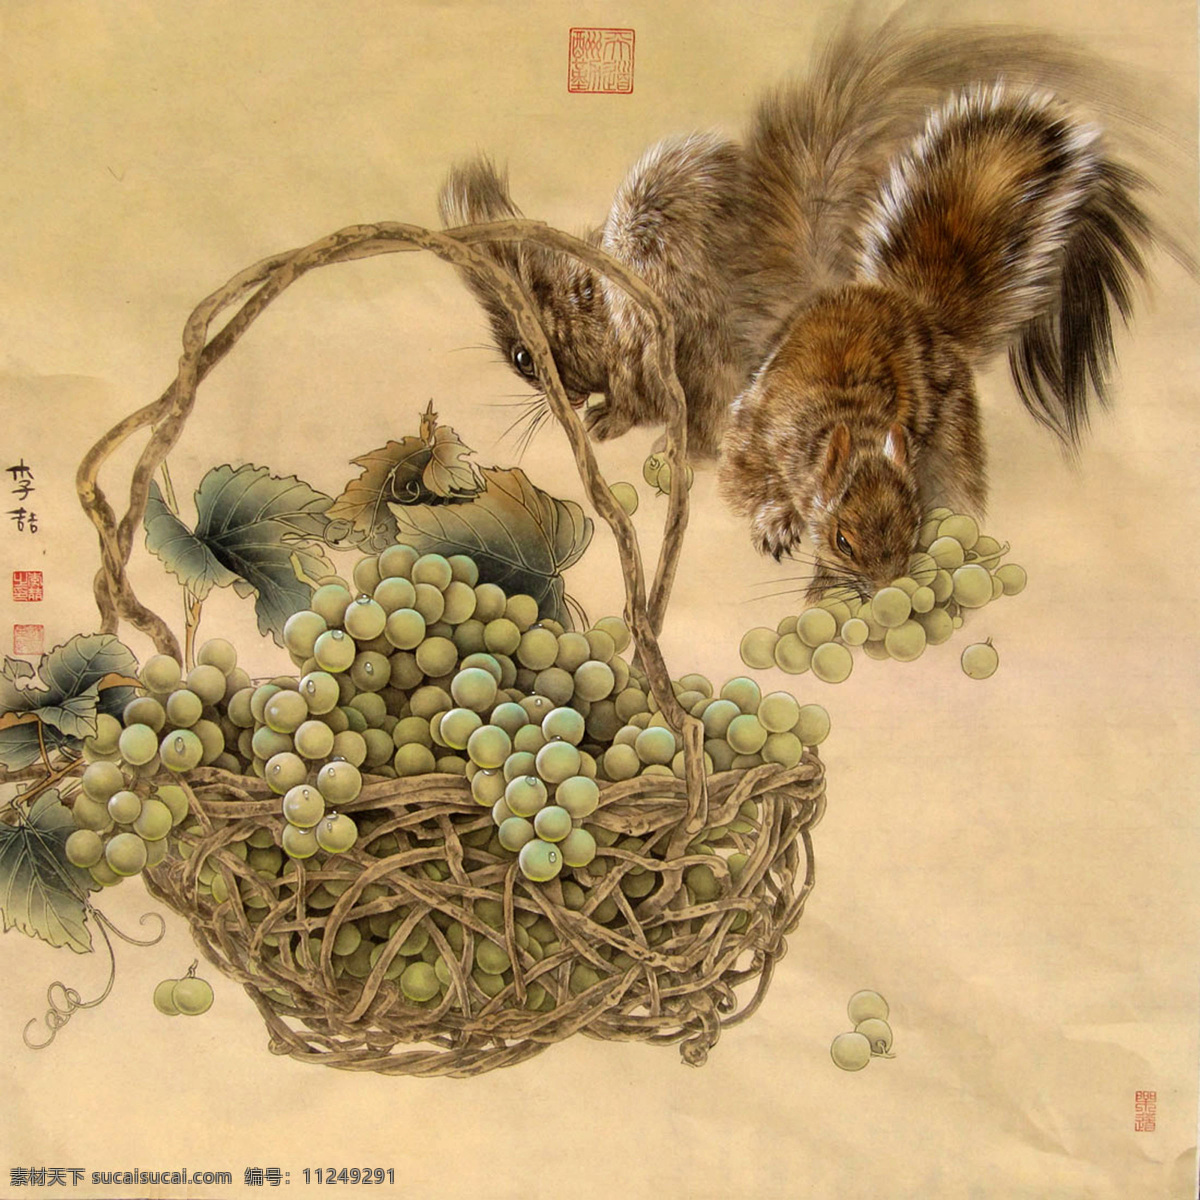 葡萄松鼠 水果 藤筐 动物 古典 国画 李喆 工笔 花鸟 绘画书法 文化艺术